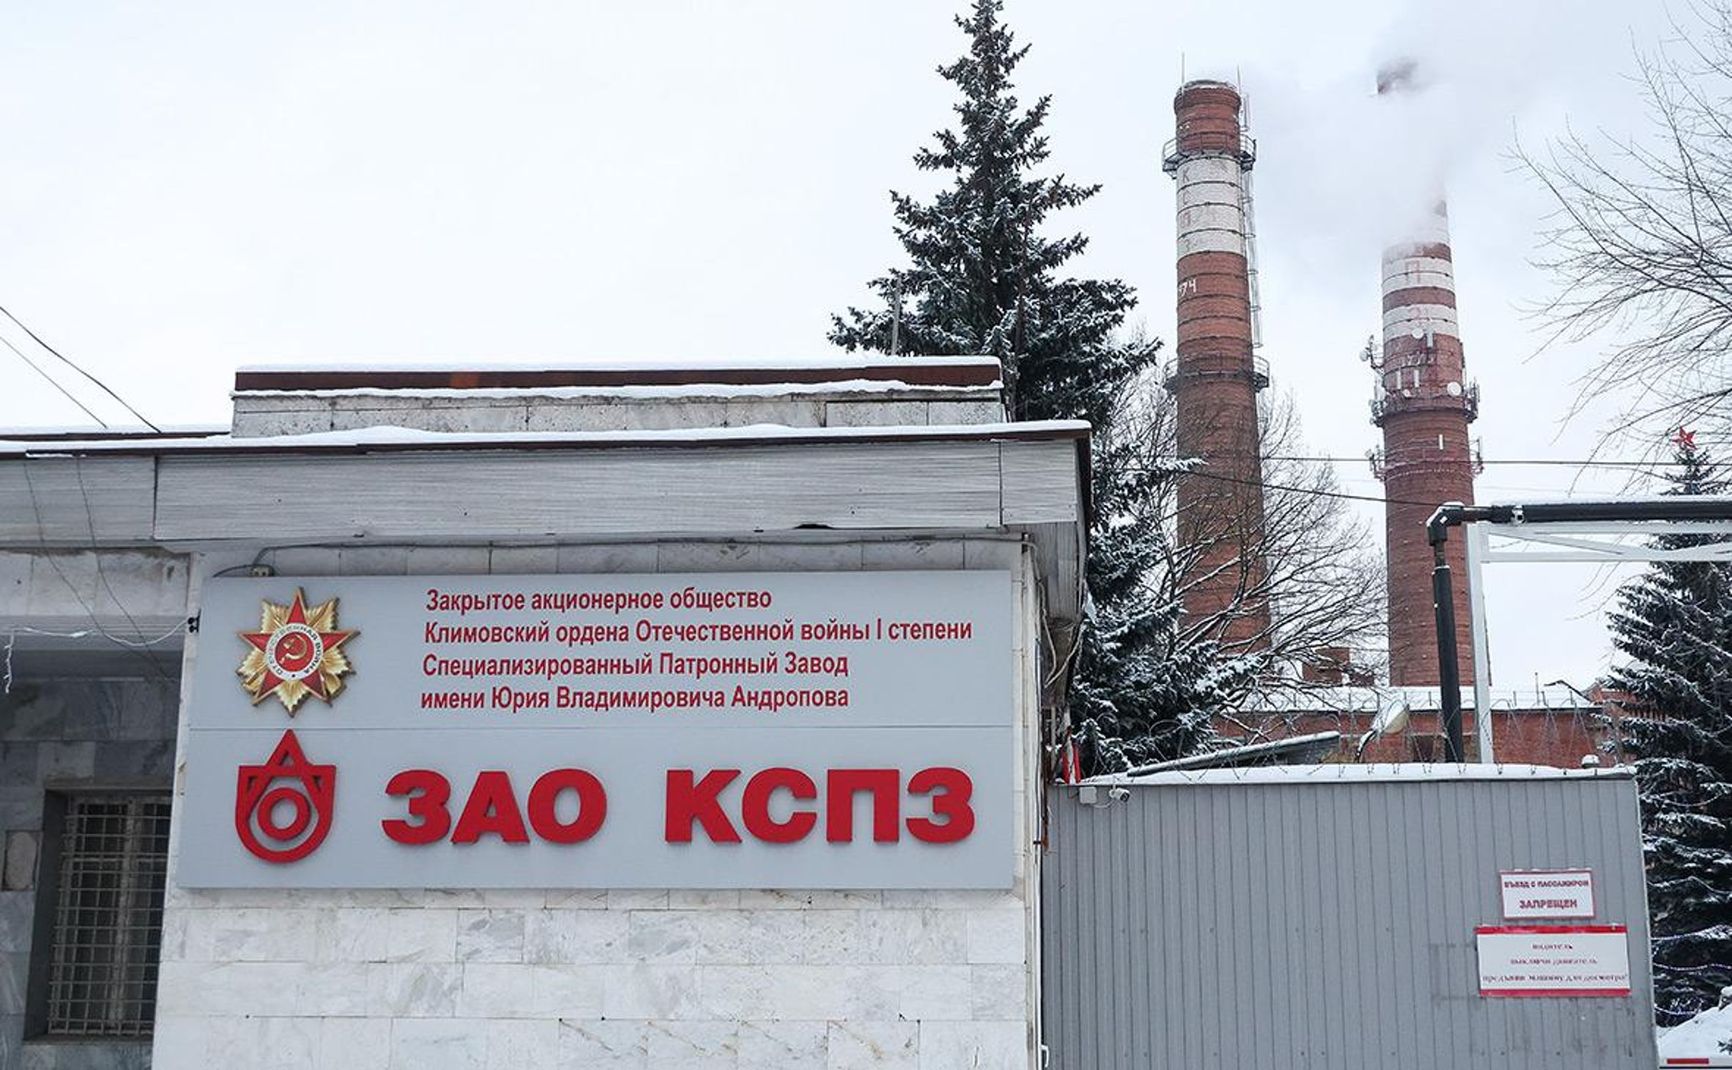 Klimovsk Specialized Ammunition Plant (ZAO KSPZ)